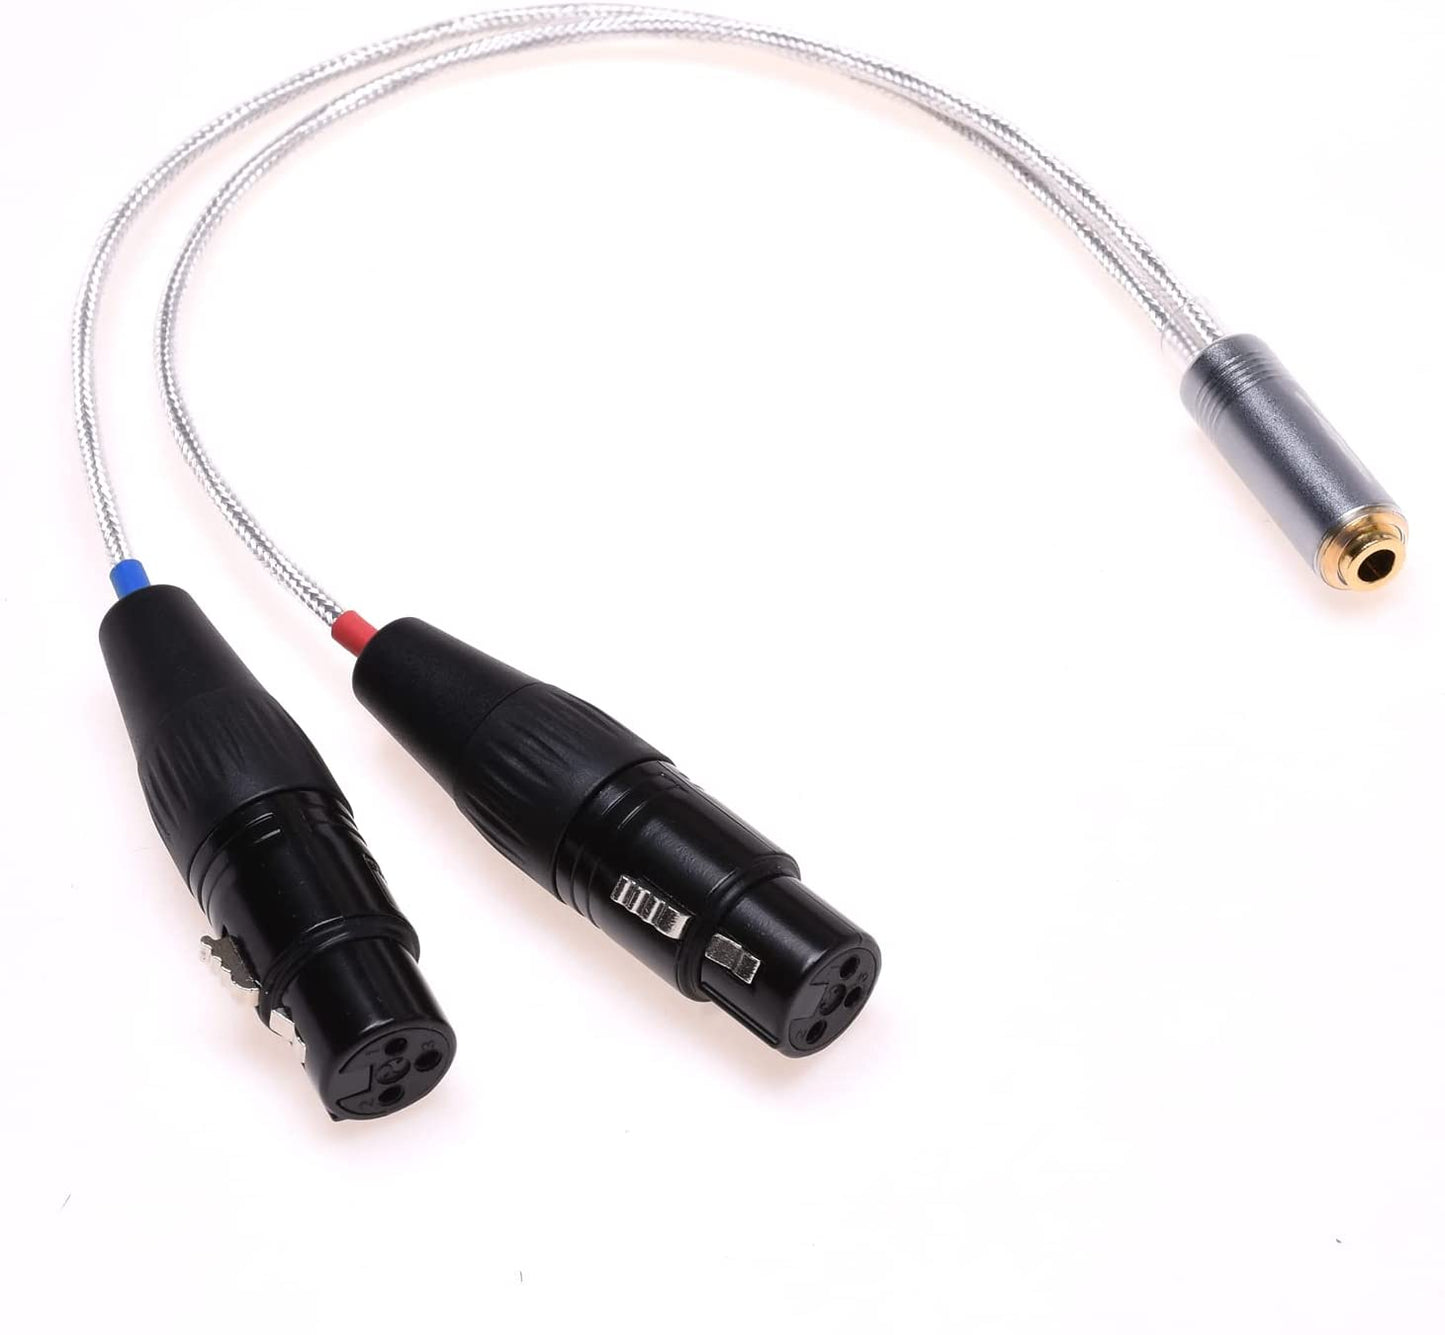 GAGACOCC 4.4mm XLR Cable 2X 3 Pin XLR to 4.4mm Female Balanced Audio Adapter for Sony NW-WM1Z 1A MDR-Z1R TA-ZH1ES PHA-2